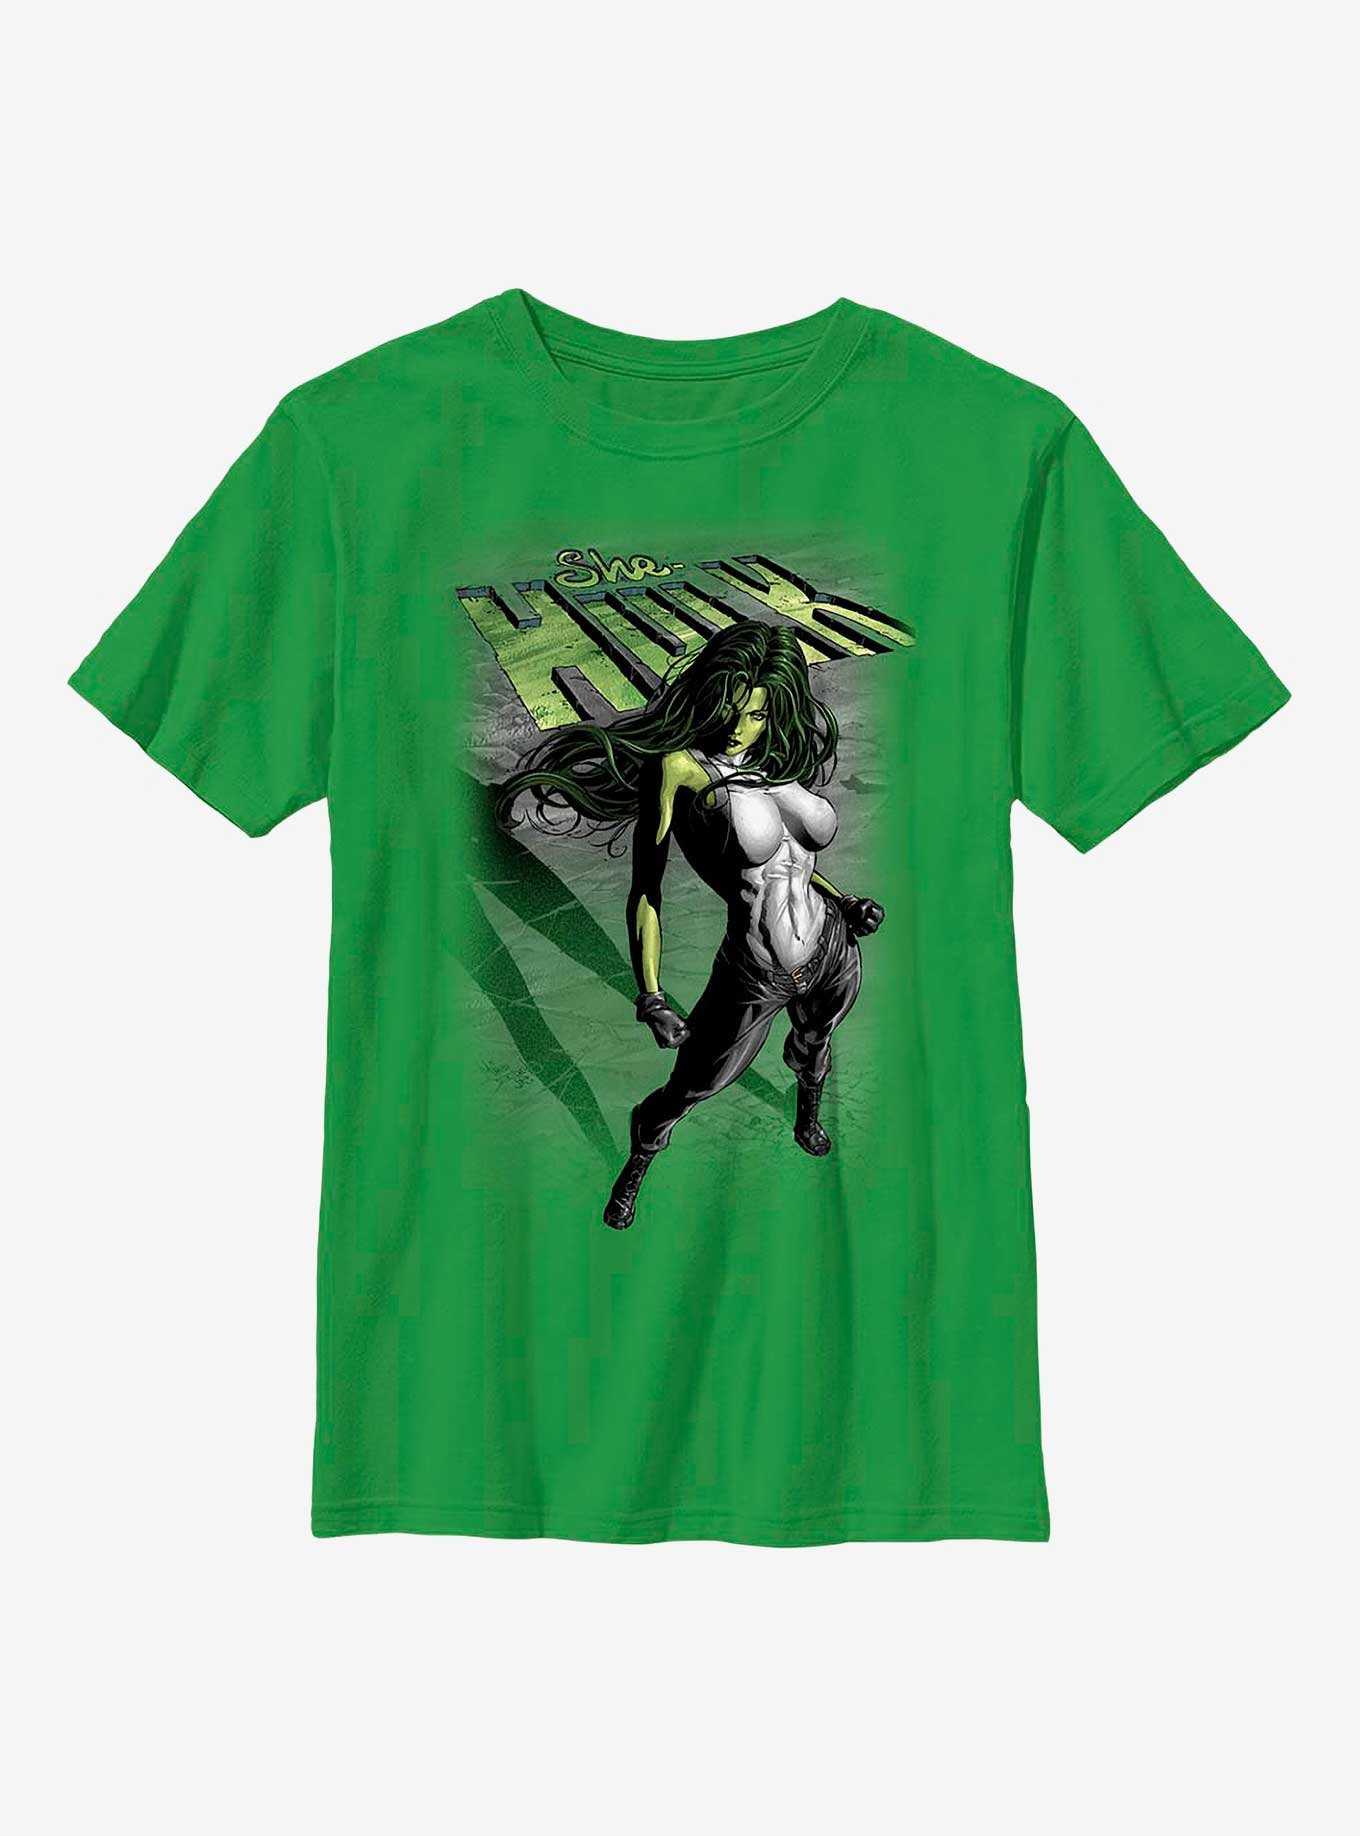 Marvel She-Hulk Incredible Youth T-Shirt, , hi-res